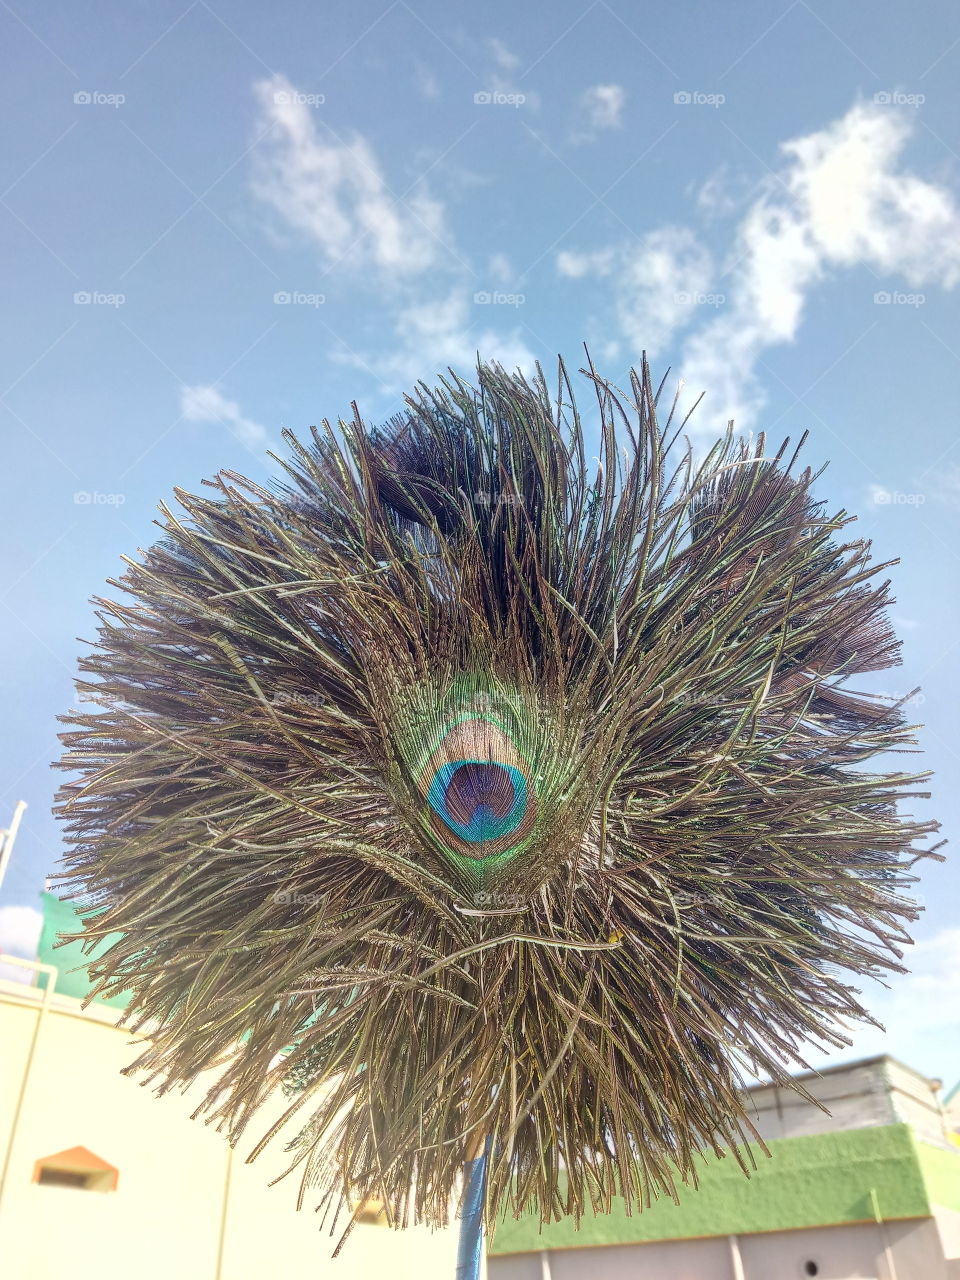 peacock's feathers fan.